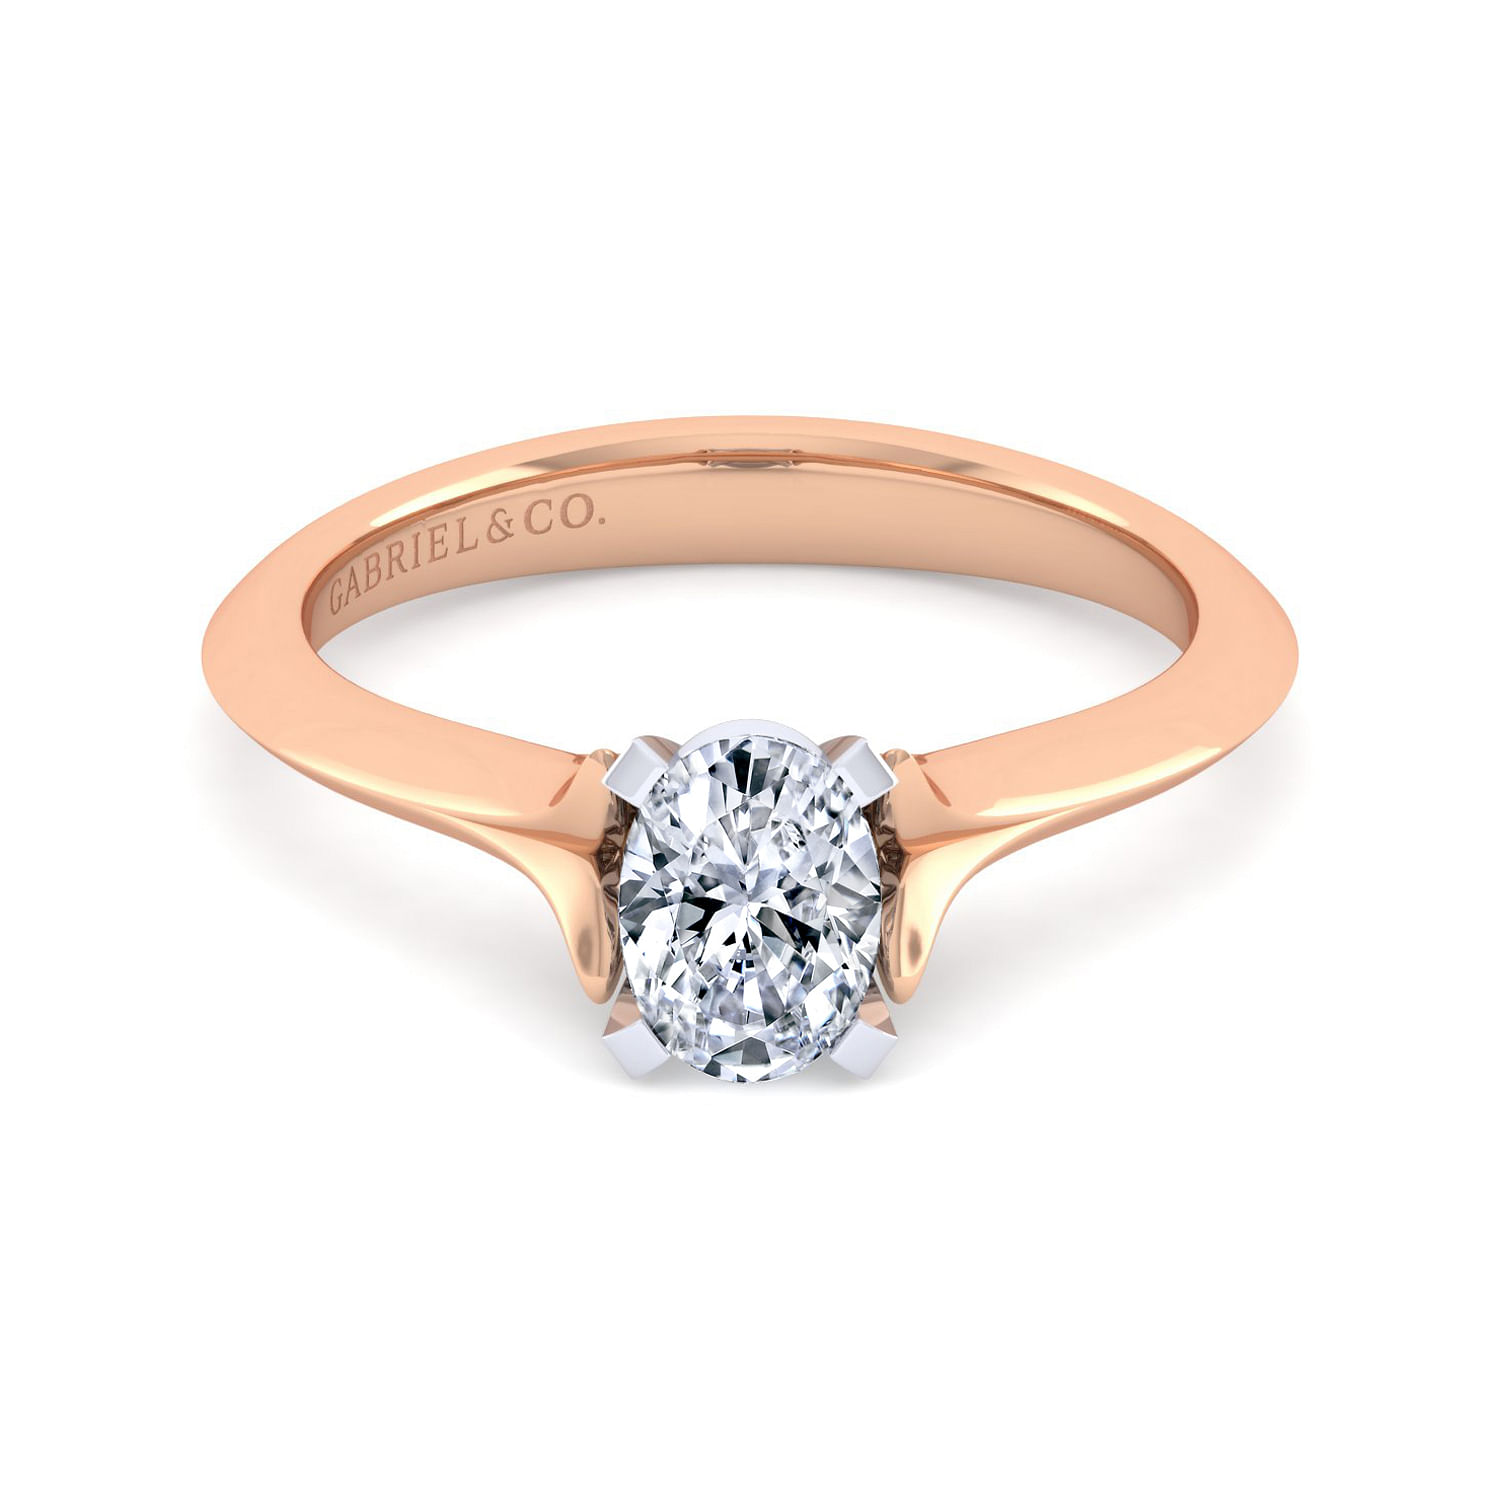 Ellis - 14K White-Rose Gold Oval Diamond Engagement Ring